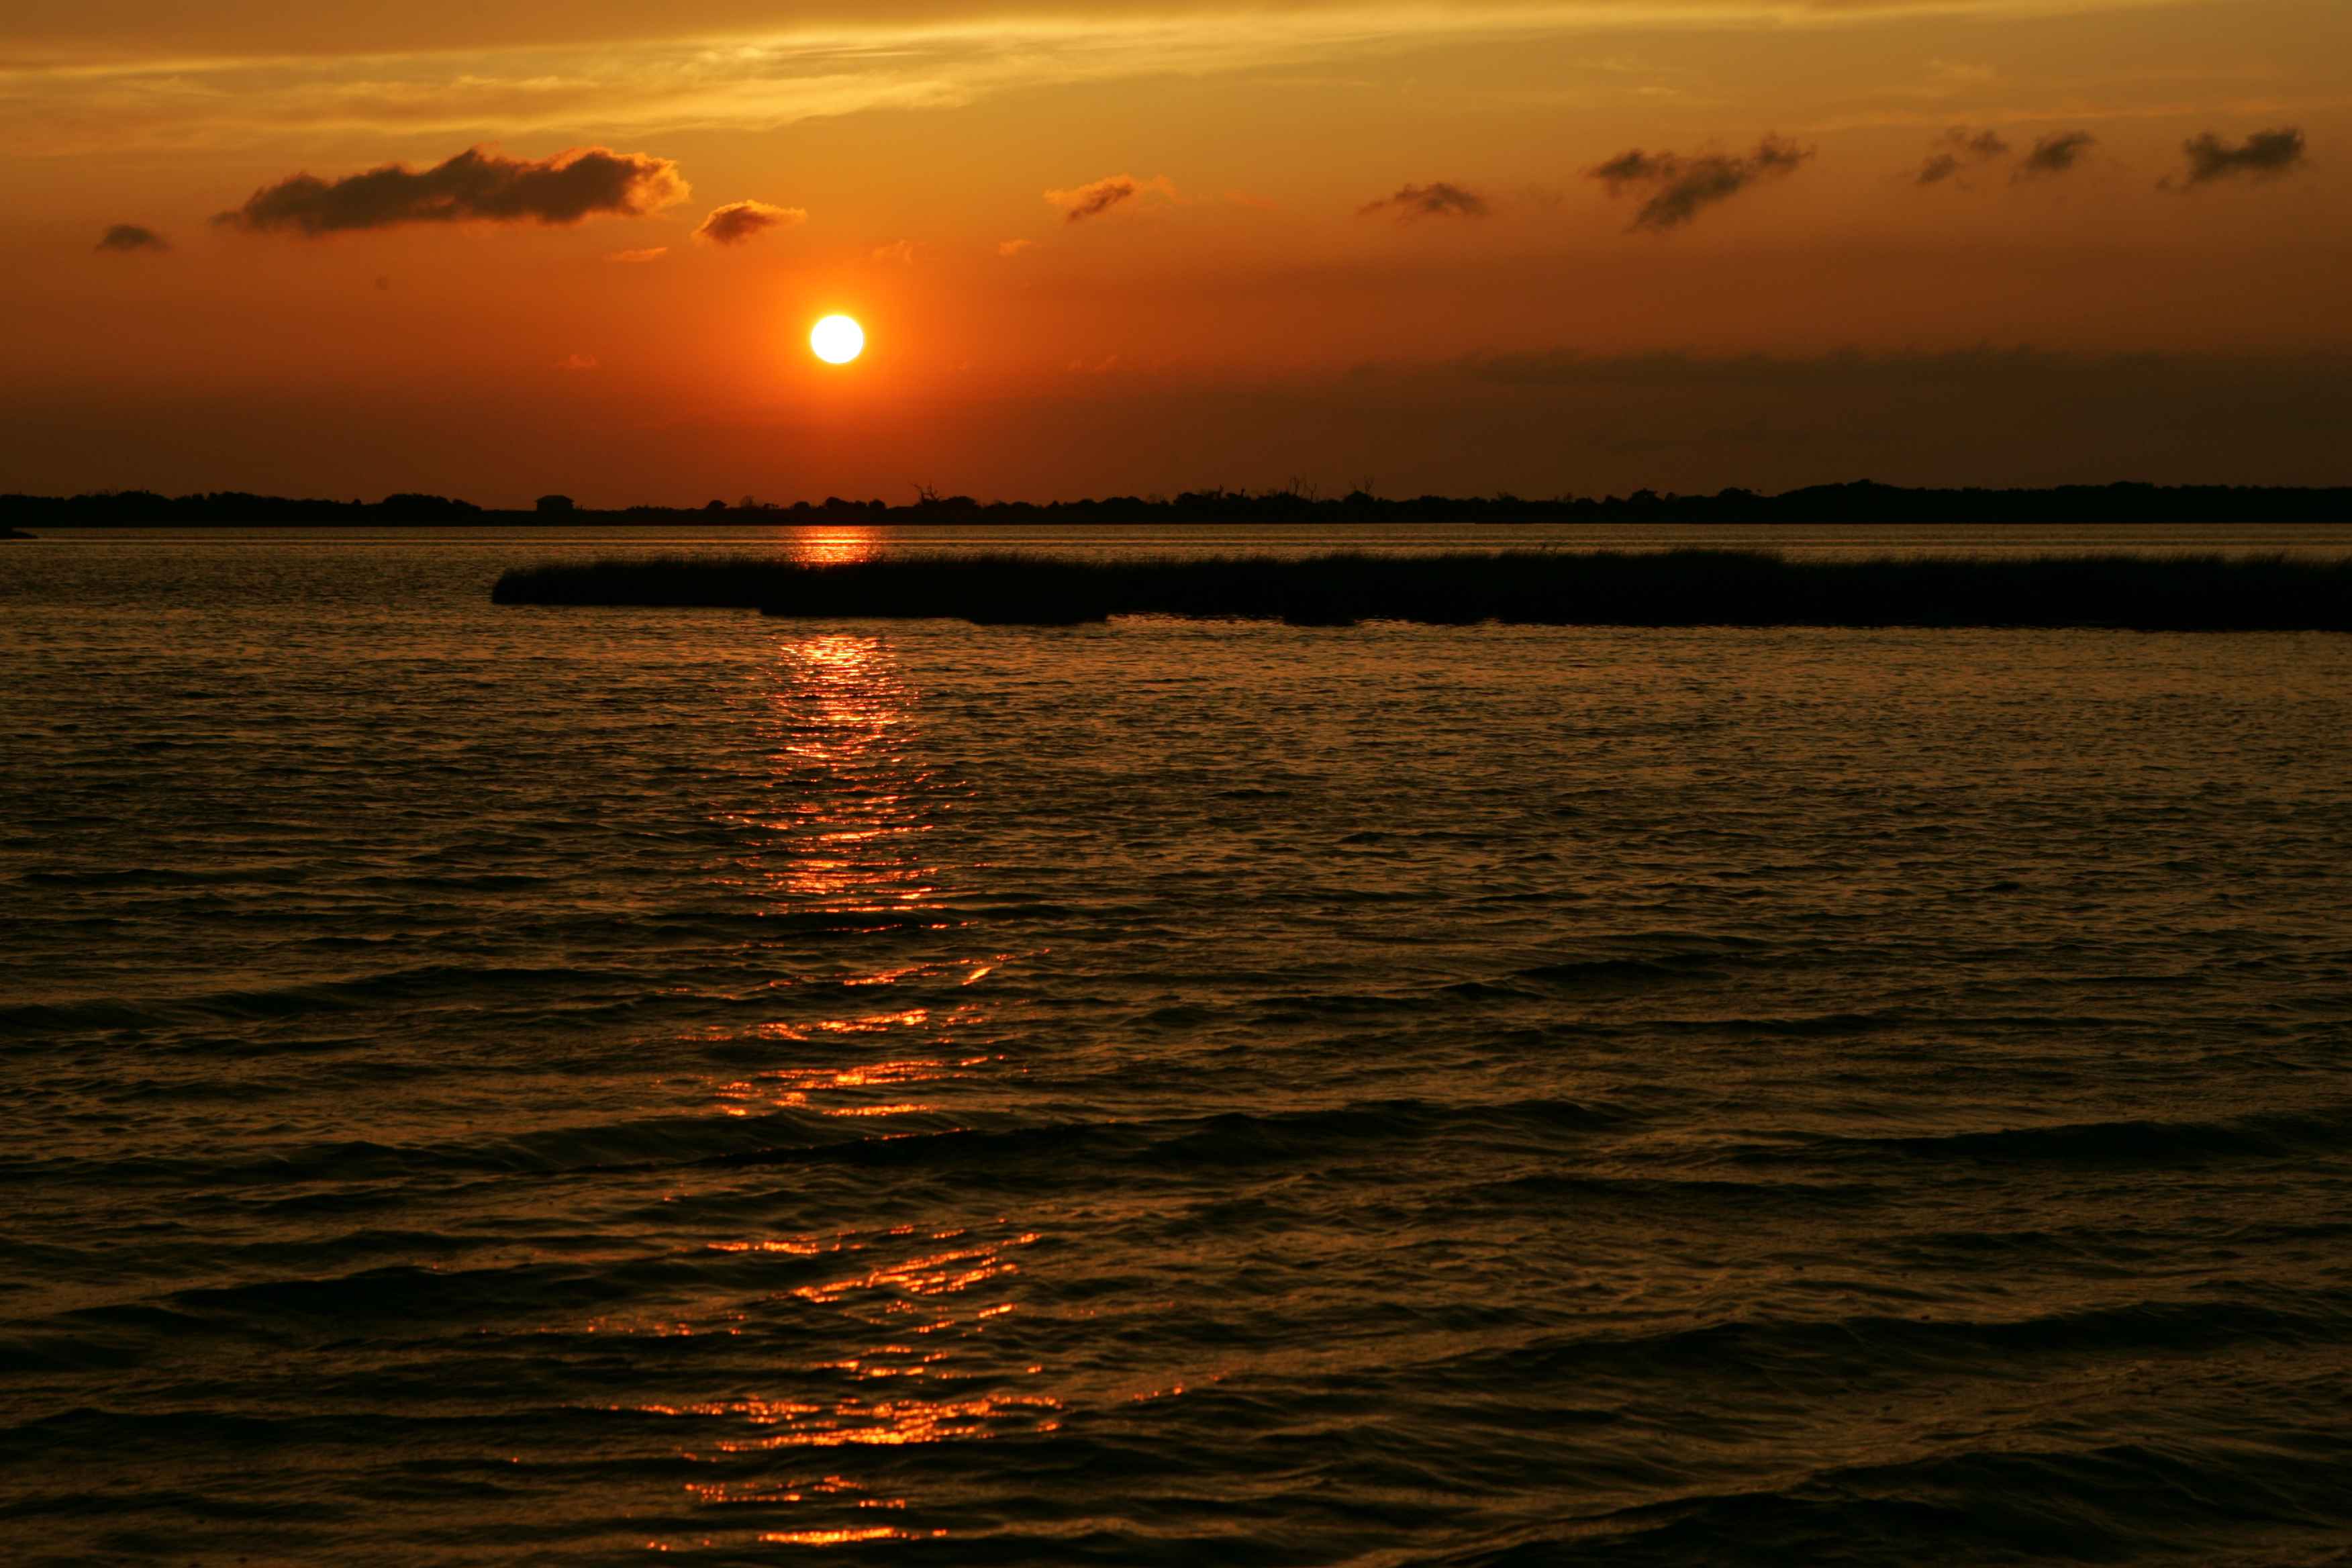 Sunset of Pea island national wildlife refuge